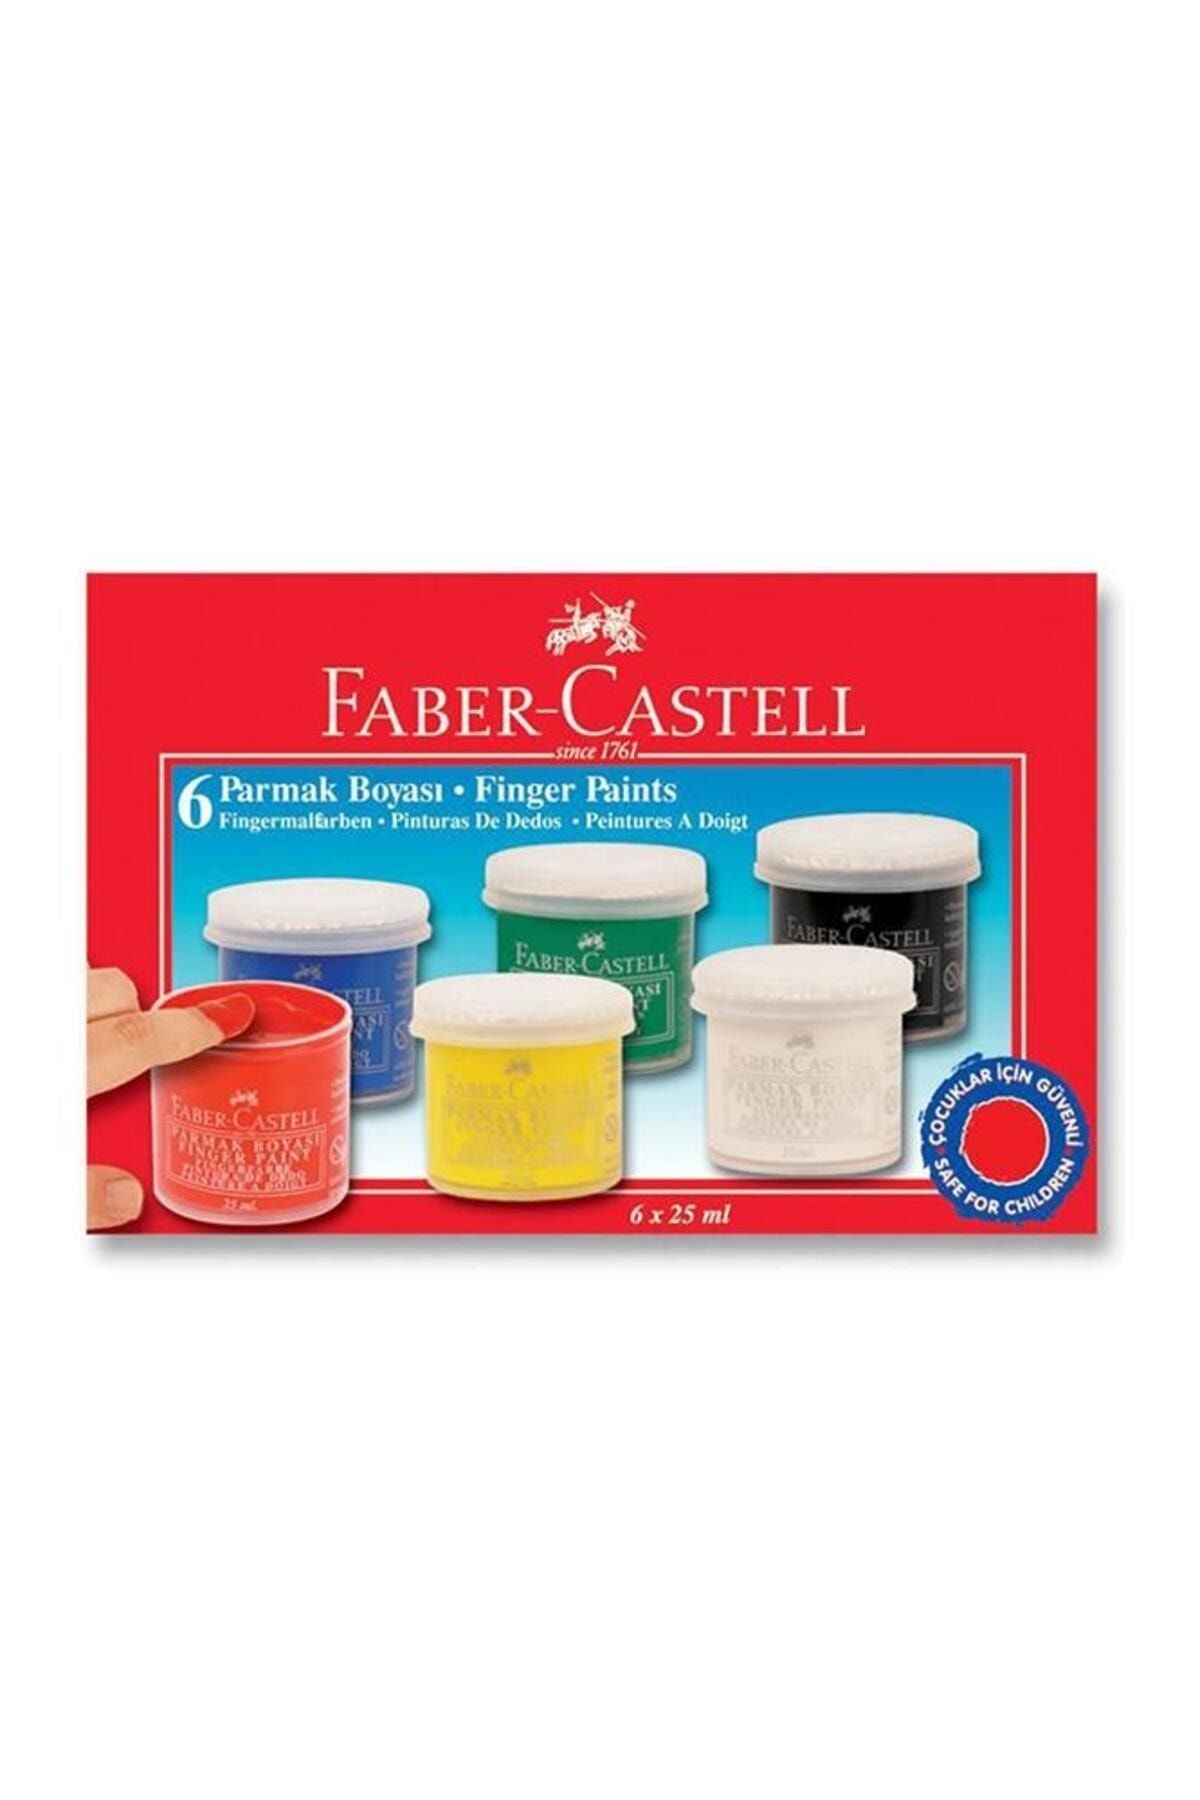 Faber Castell Parmak Boyası 6 Renk 25 ml 1 Paket 6 Lı Parmak Boya Anasınıfı Okul Öncesi Kreş Etkinlik